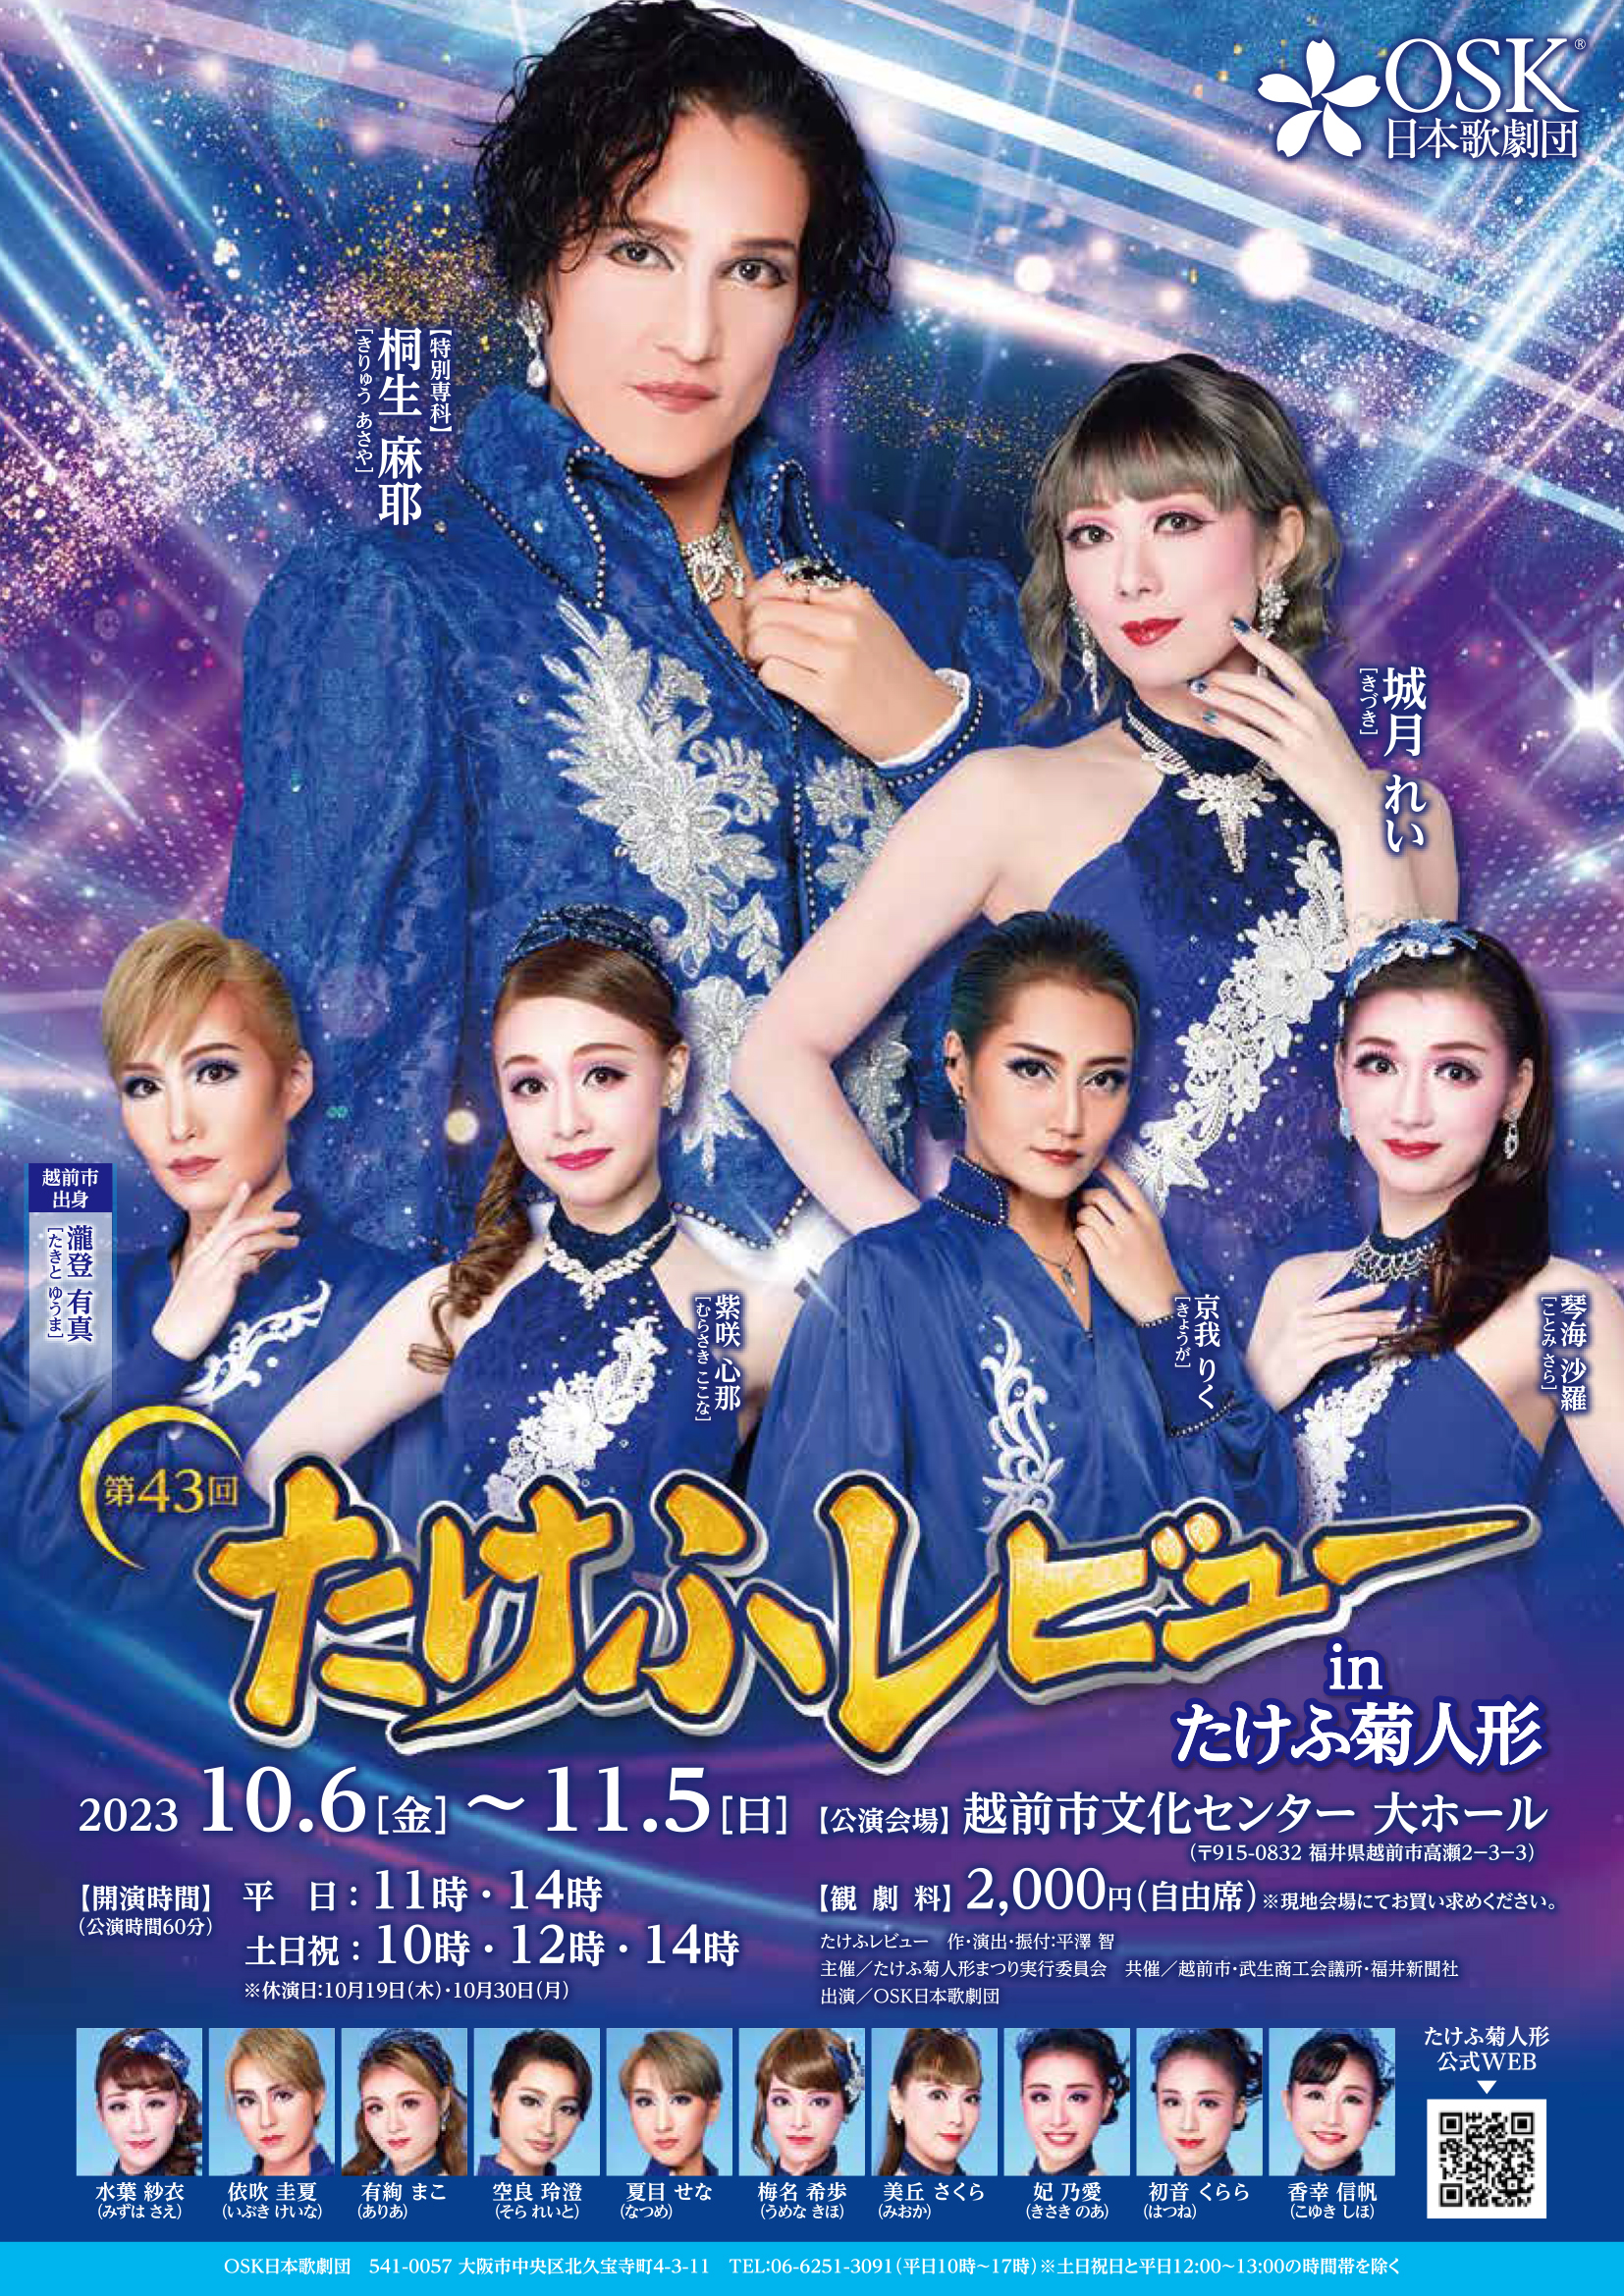 23/10/6-11/5たけふレビューのお知らせ | OSK日本歌劇団